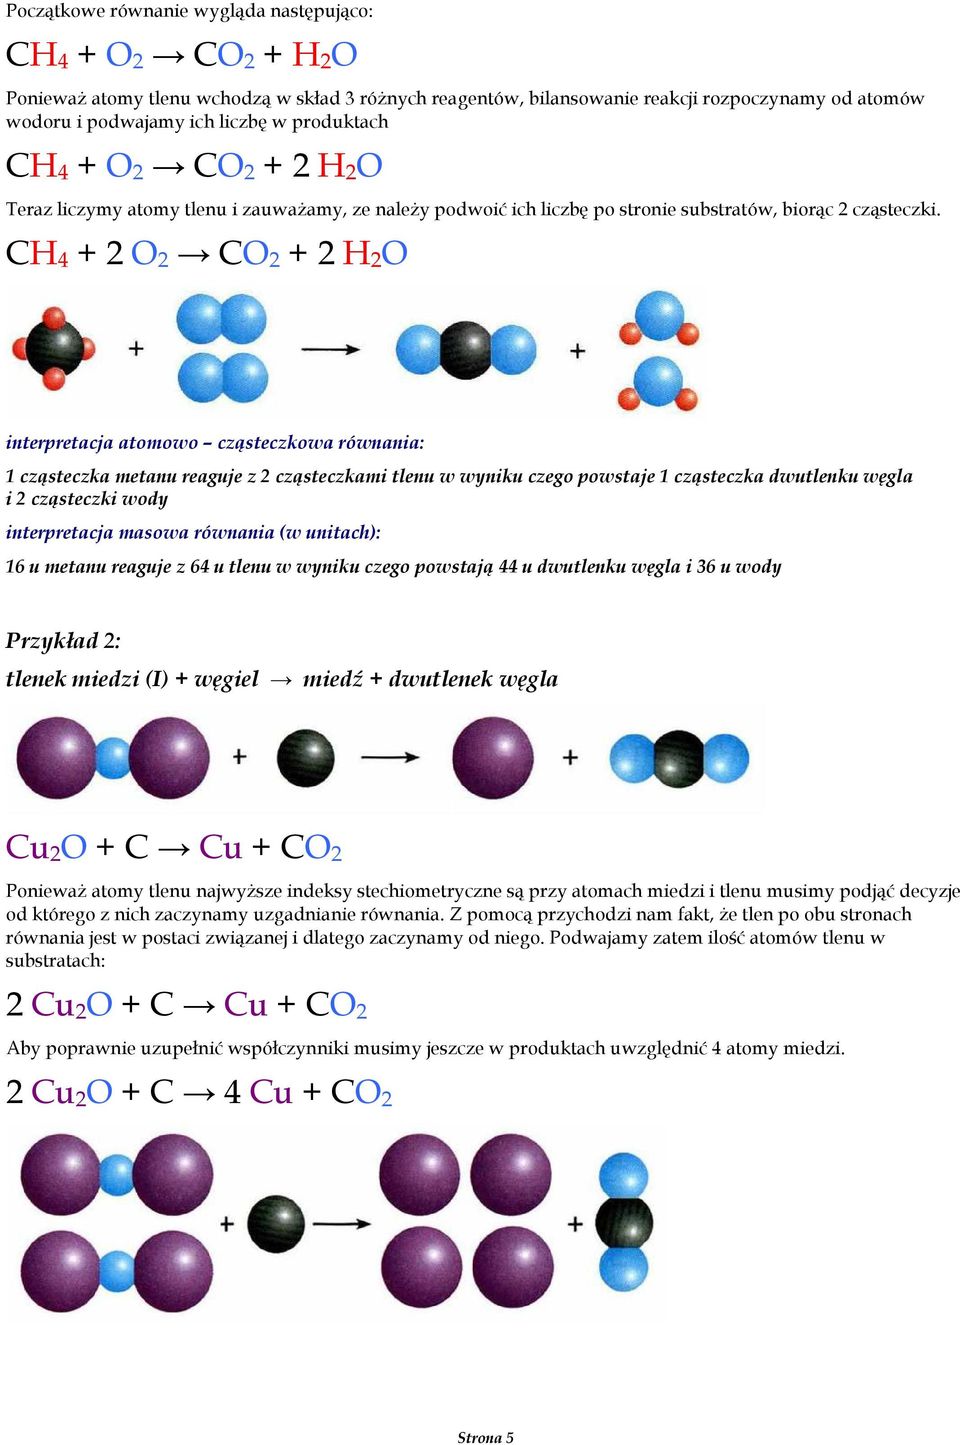 CH 4 + 2 O 2 CO 2 + 2 H 2 O 1 cząsteczka metanu reaguje z 2 cząsteczkami tlenu w wyniku czego powstaje 1 cząsteczka dwutlenku węgla i 2 cząsteczki wody 16 u metanu reaguje z 64 u tlenu w wyniku czego